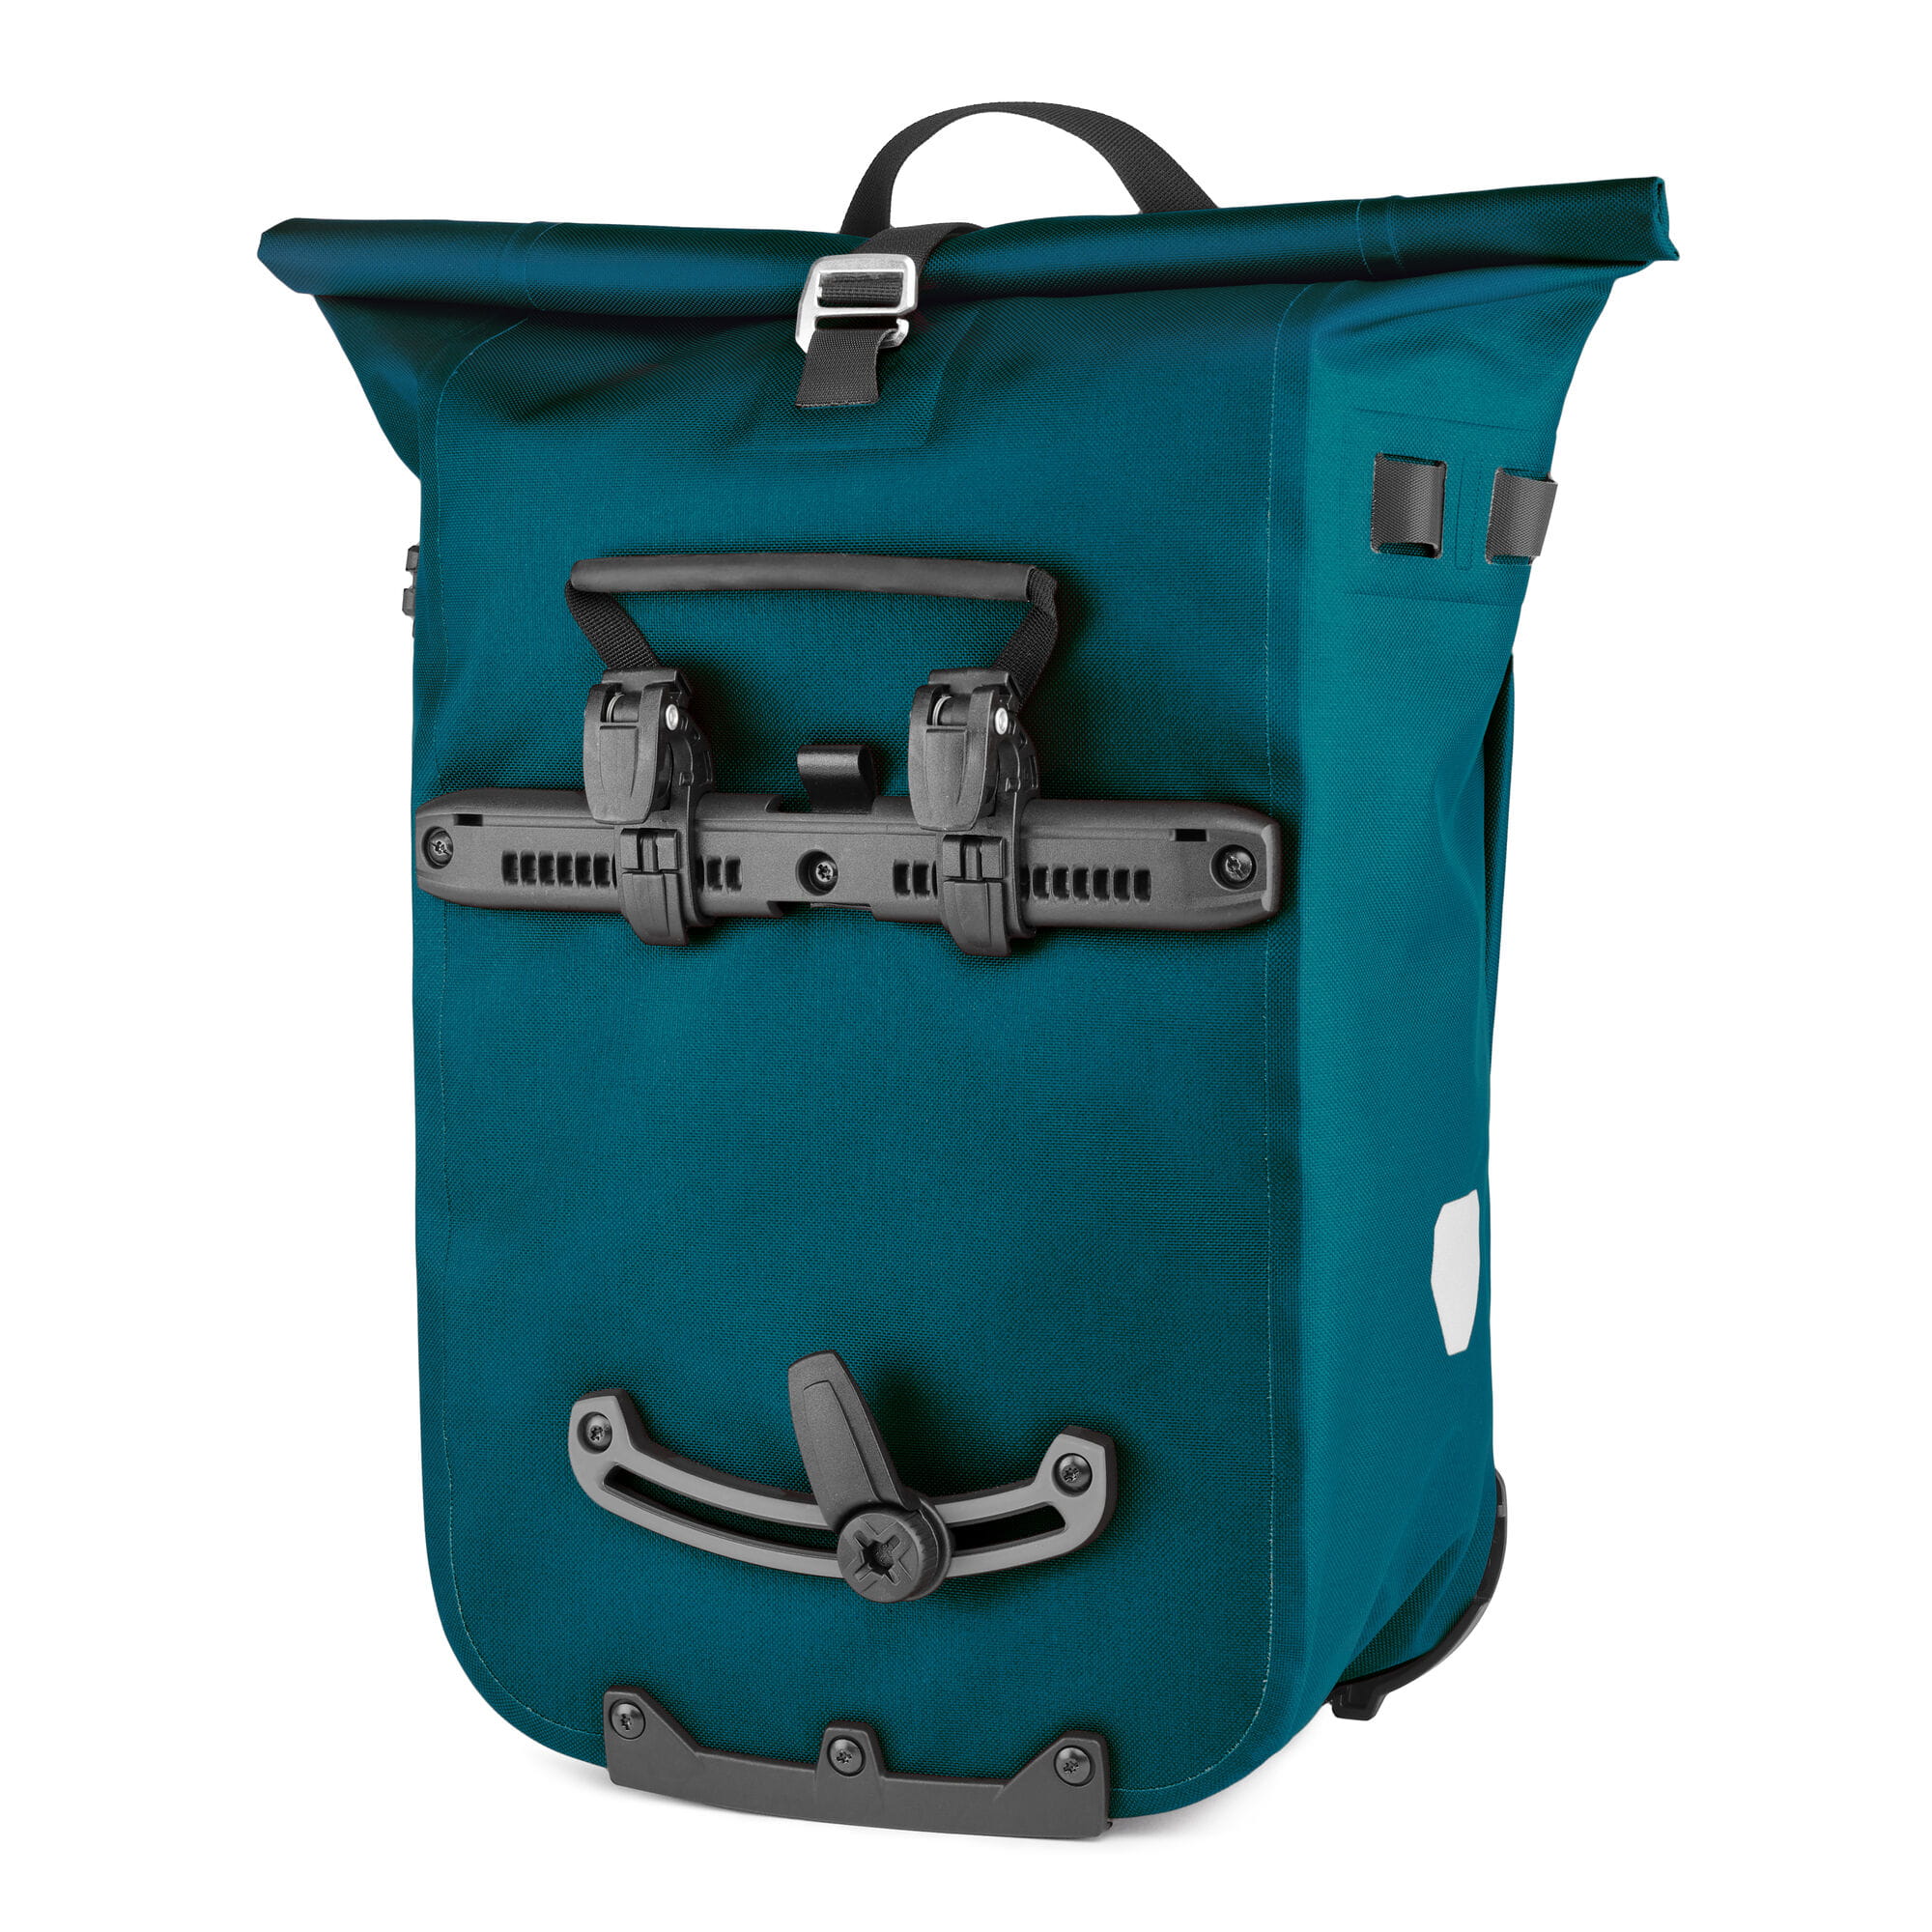 Ortlieb Vario PS QL2.1 Rucksack und Hinterradtasche